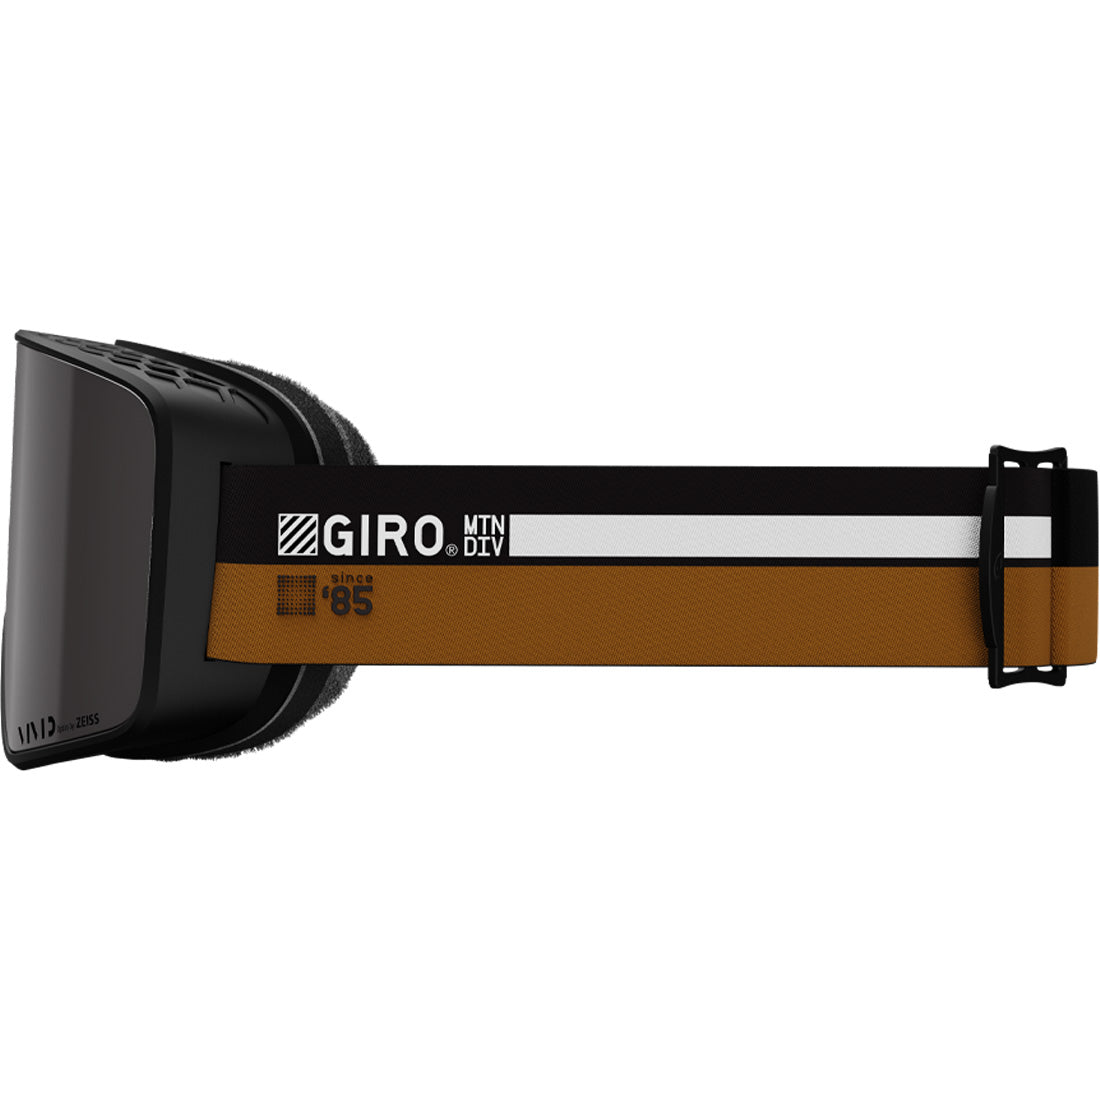 Giro Method Goggle